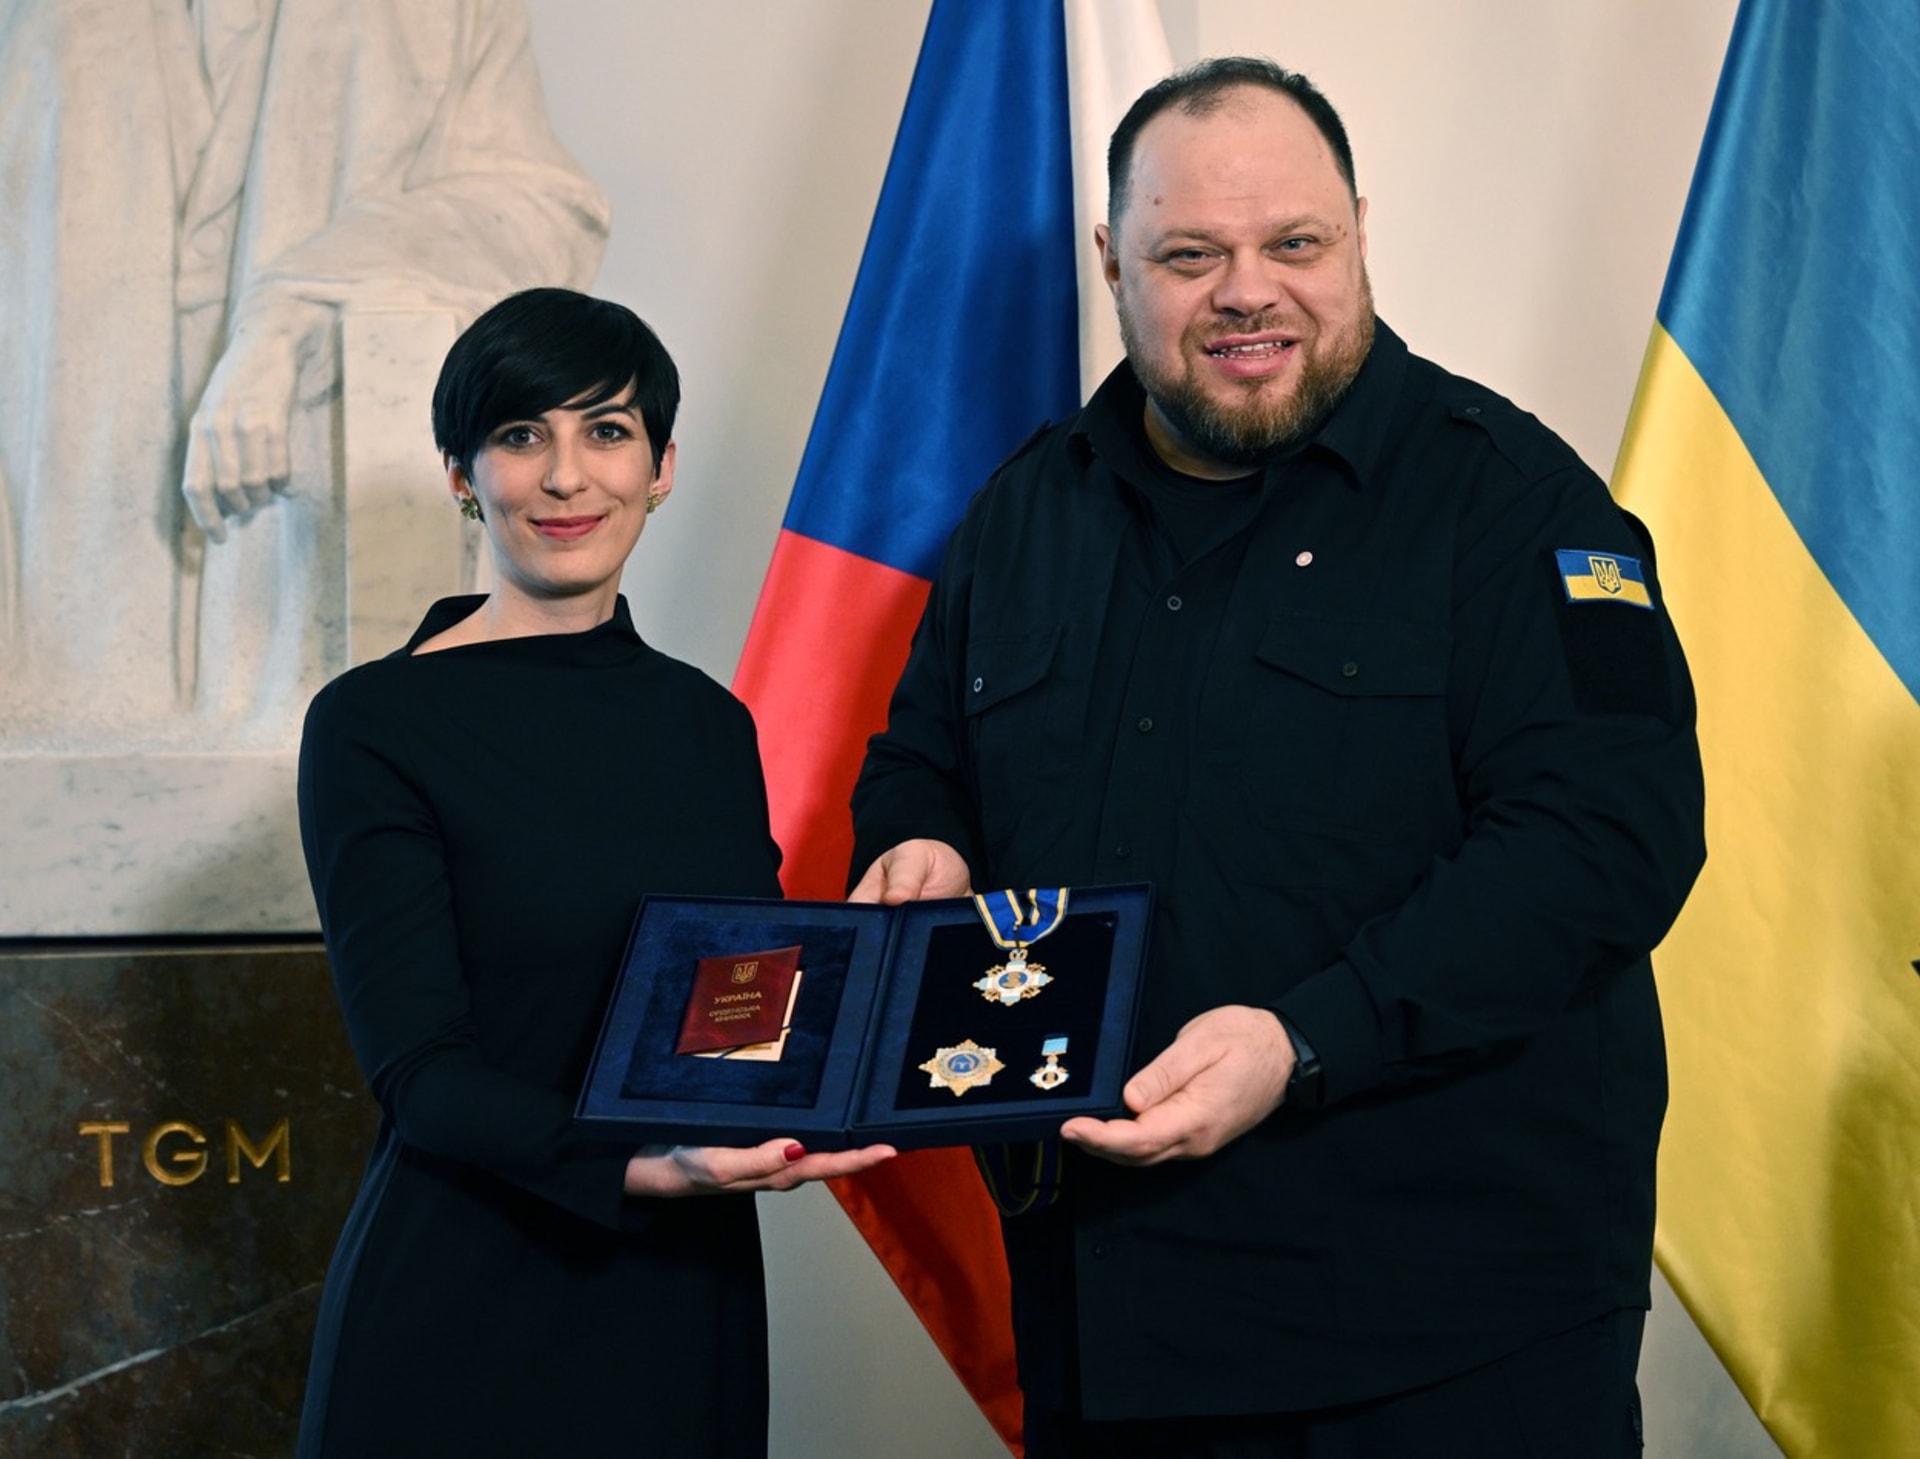 Předseda ukrajinského parlamentu předal vyznamenání Markétě Pekarové Adamové